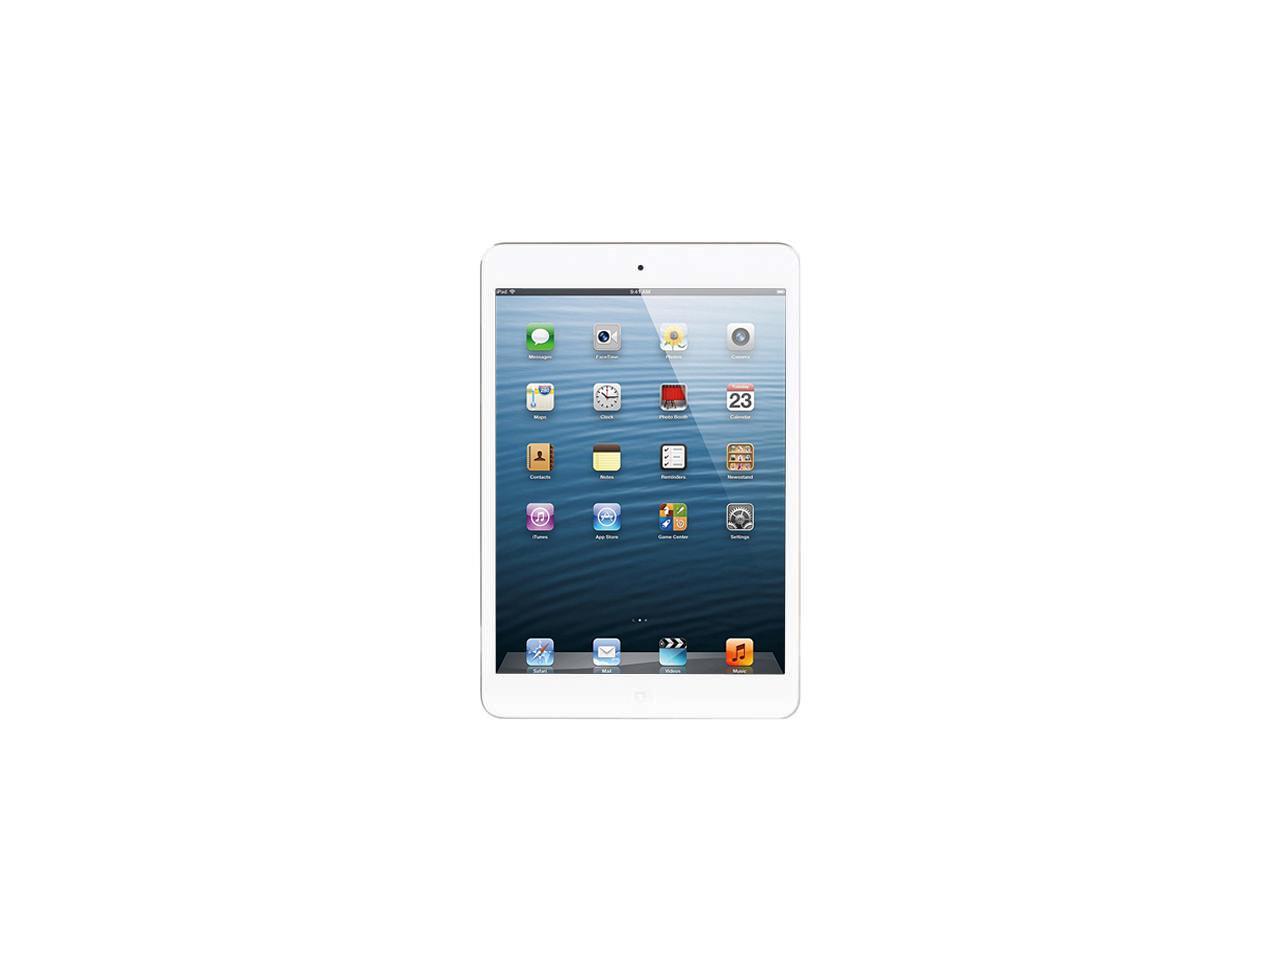 Apple iPad Mini 2 with Retina Display ME280LL/A (32 GB, Wi-Fi, White with Silver)